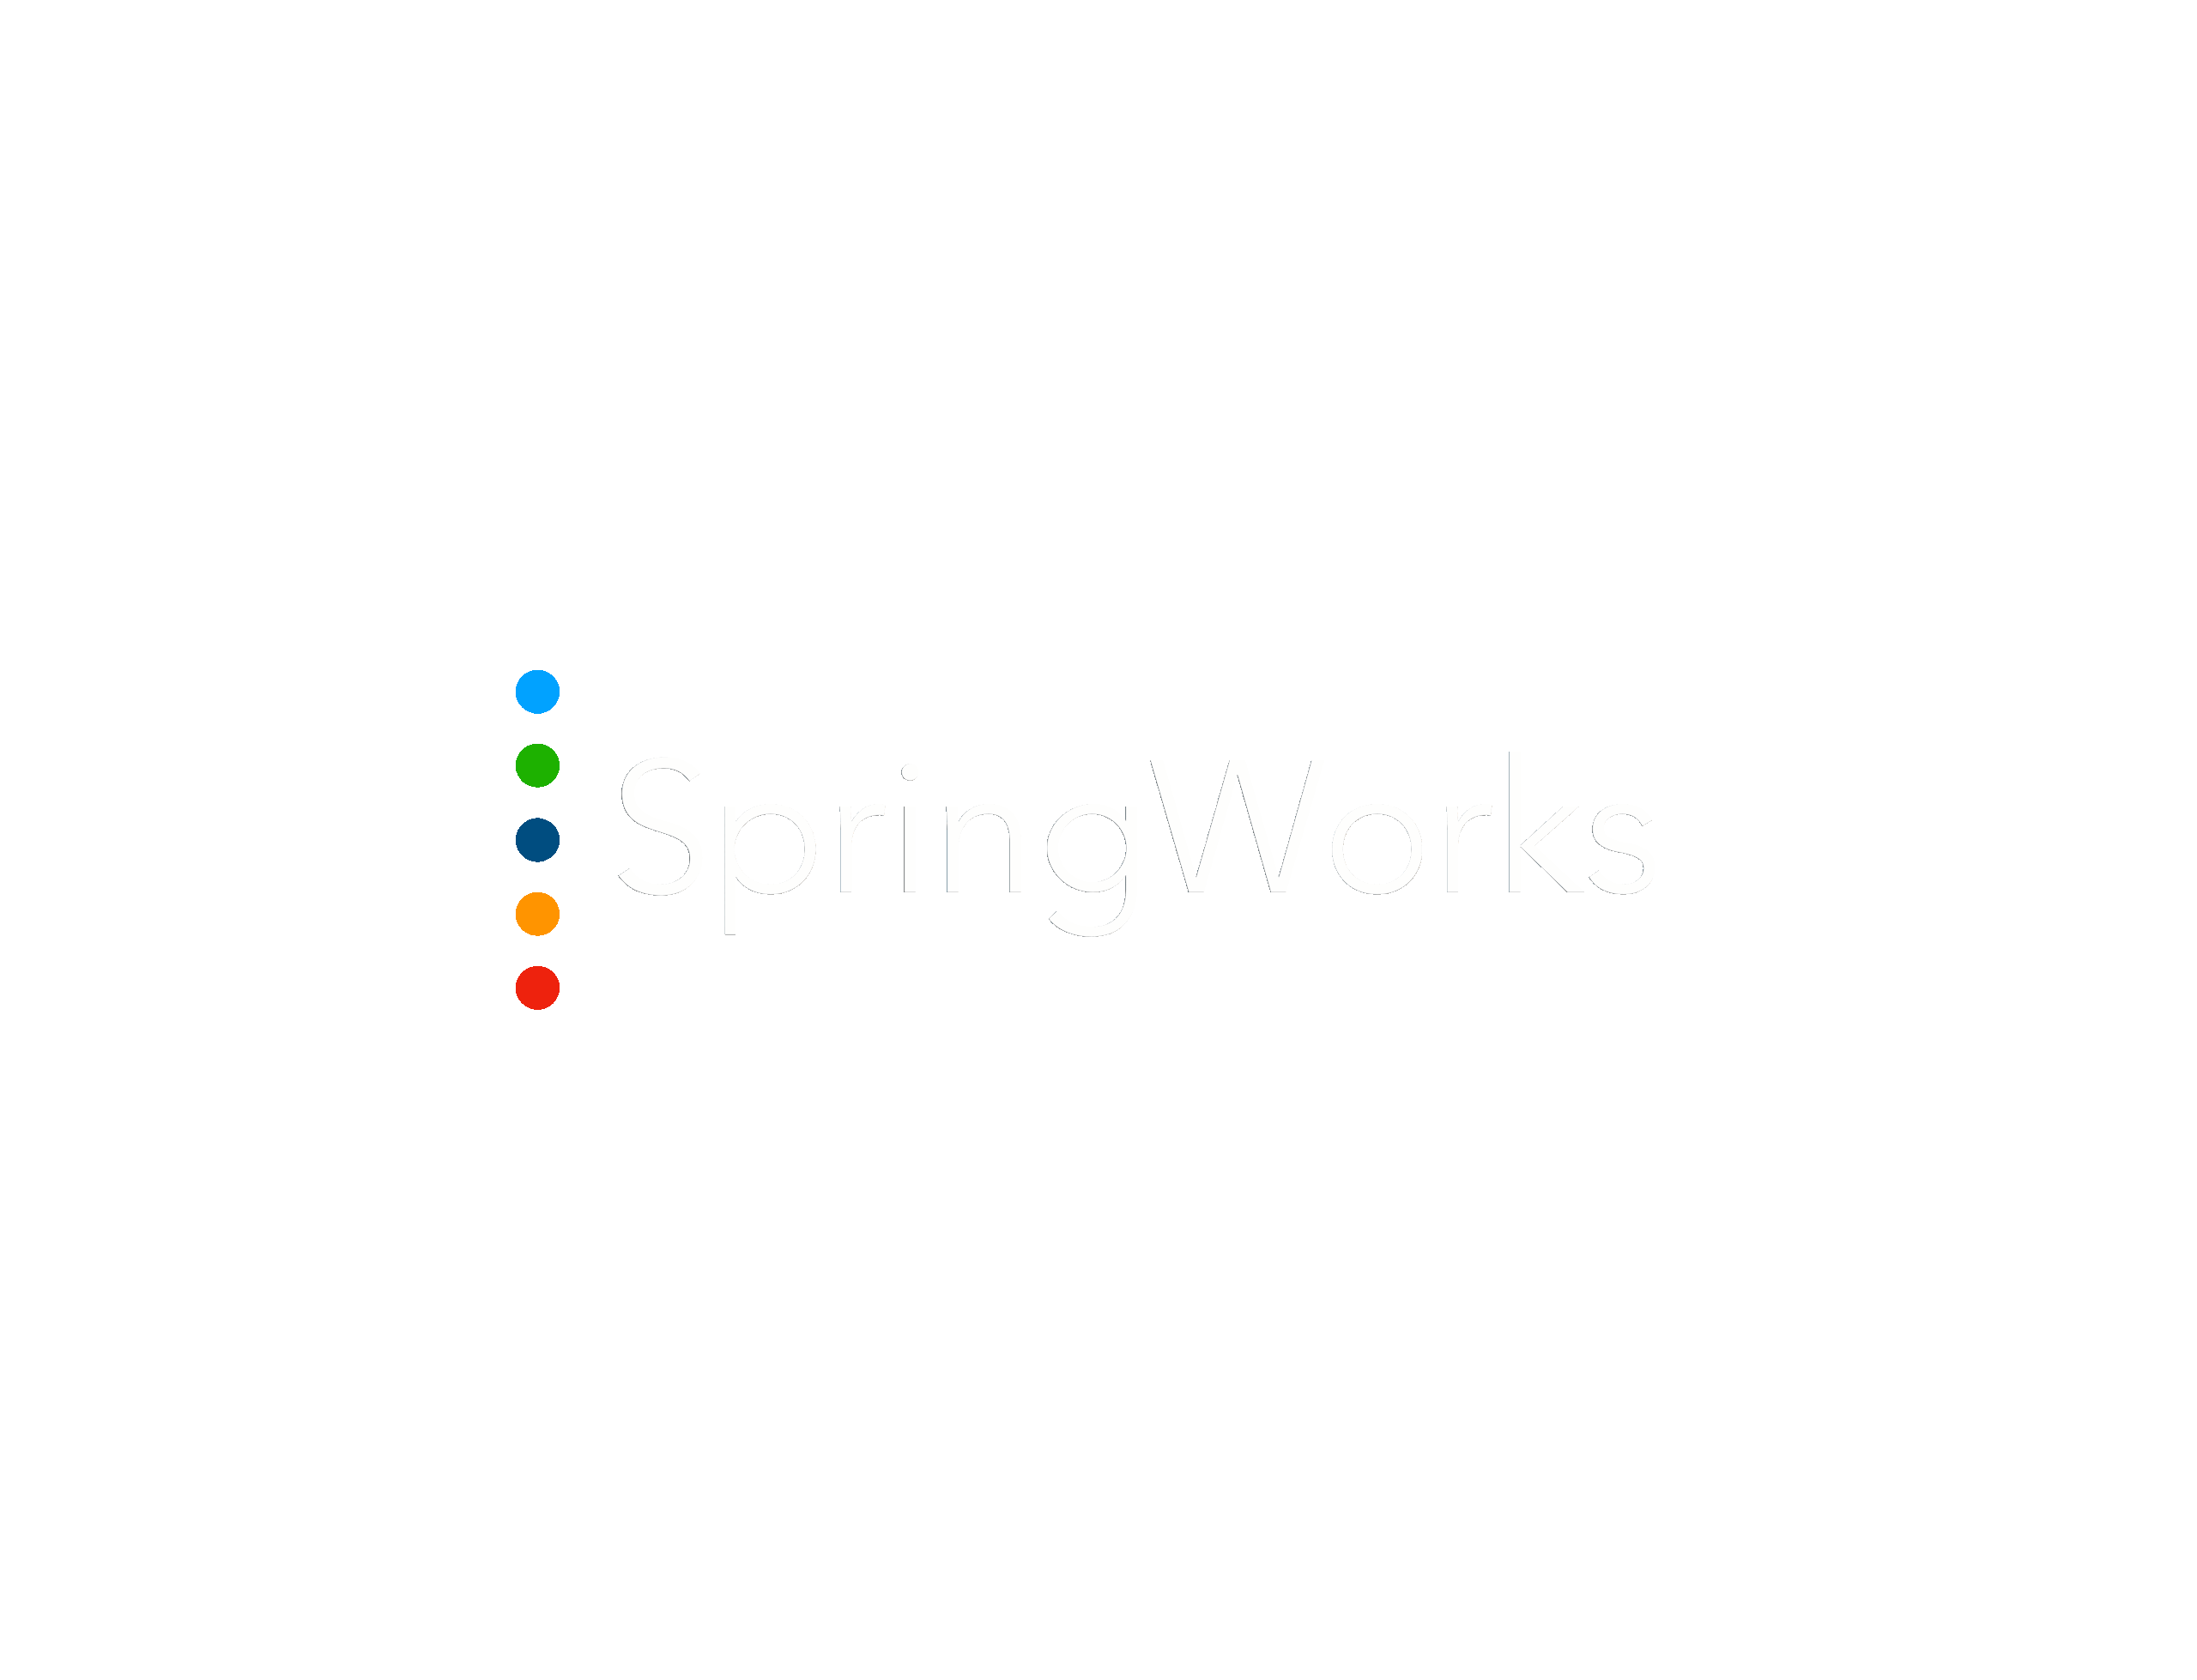 Logo Springworks white